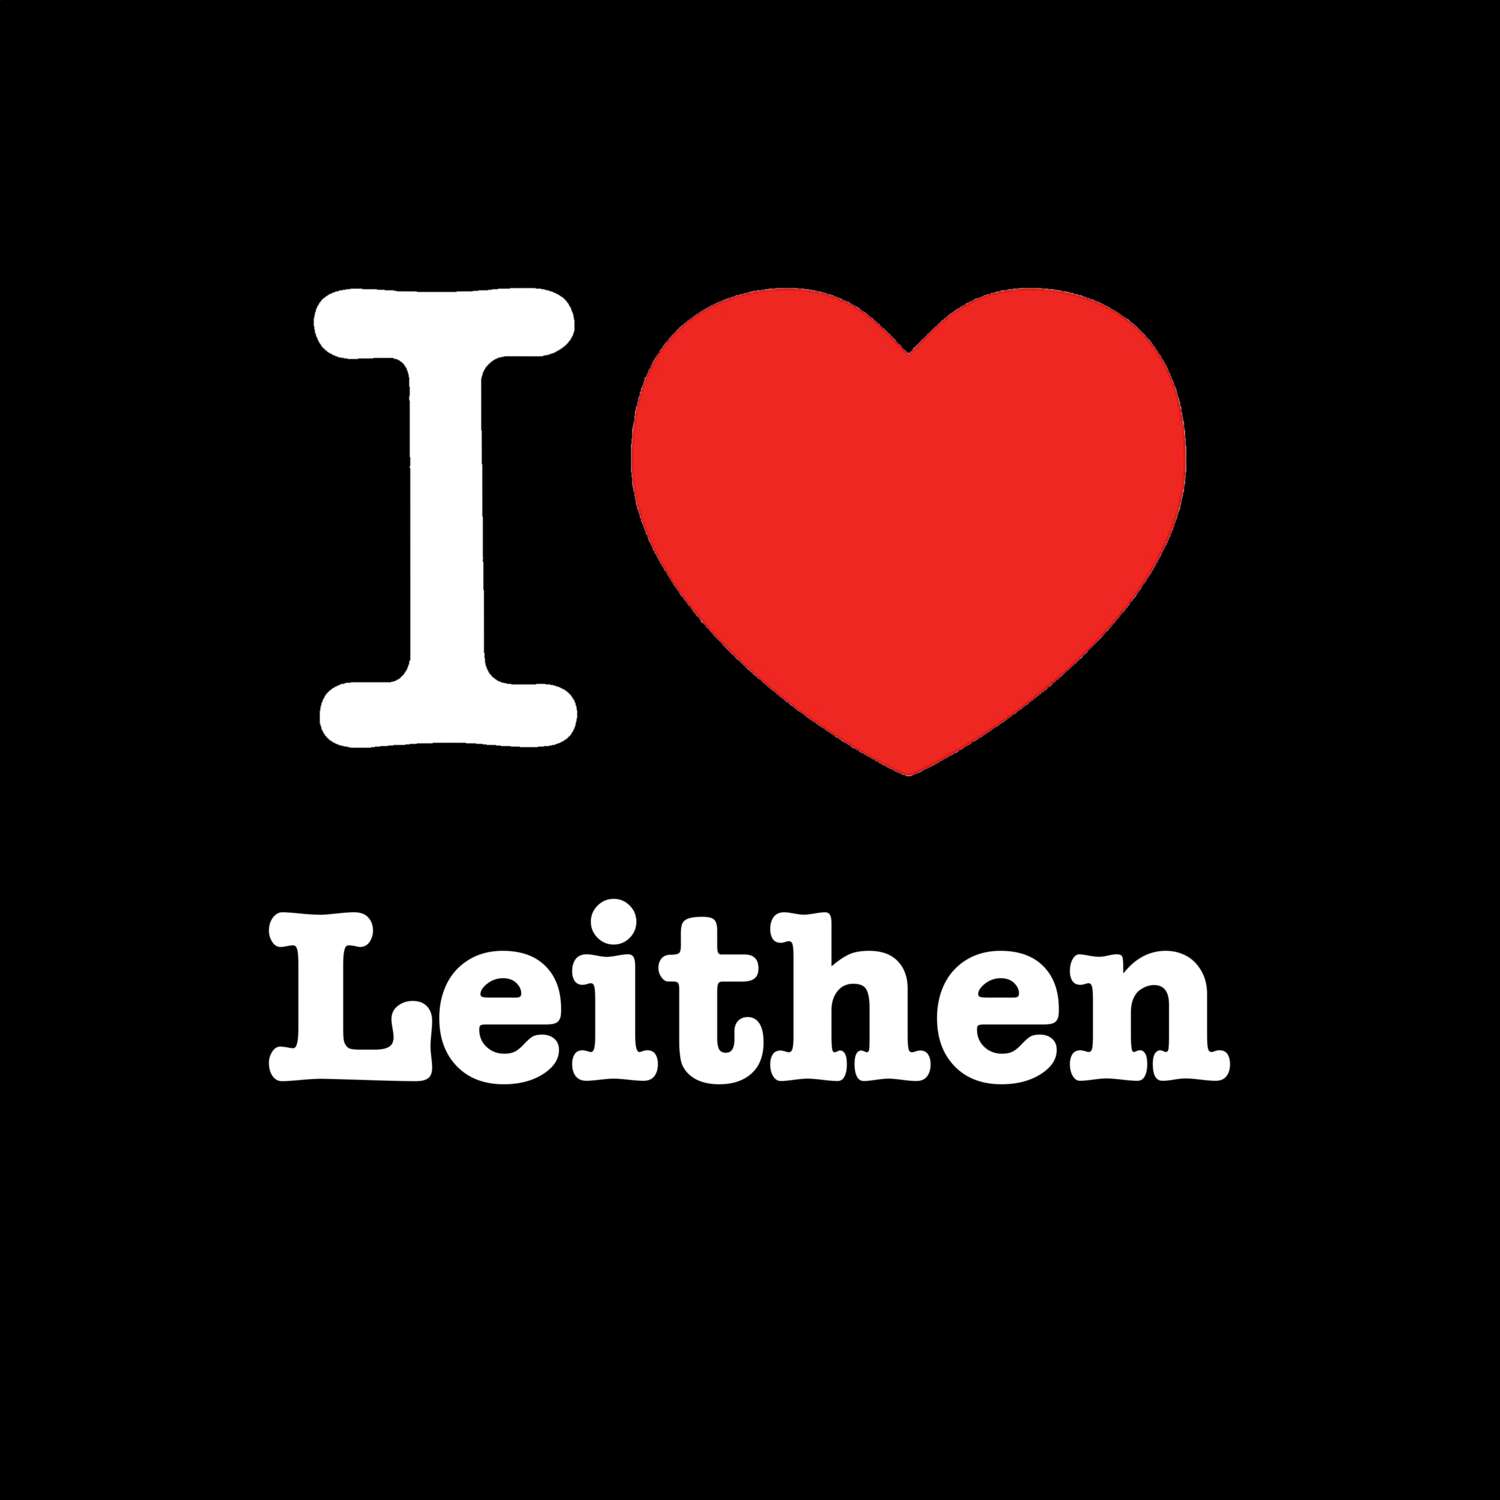 Leithen T-Shirt »I love«